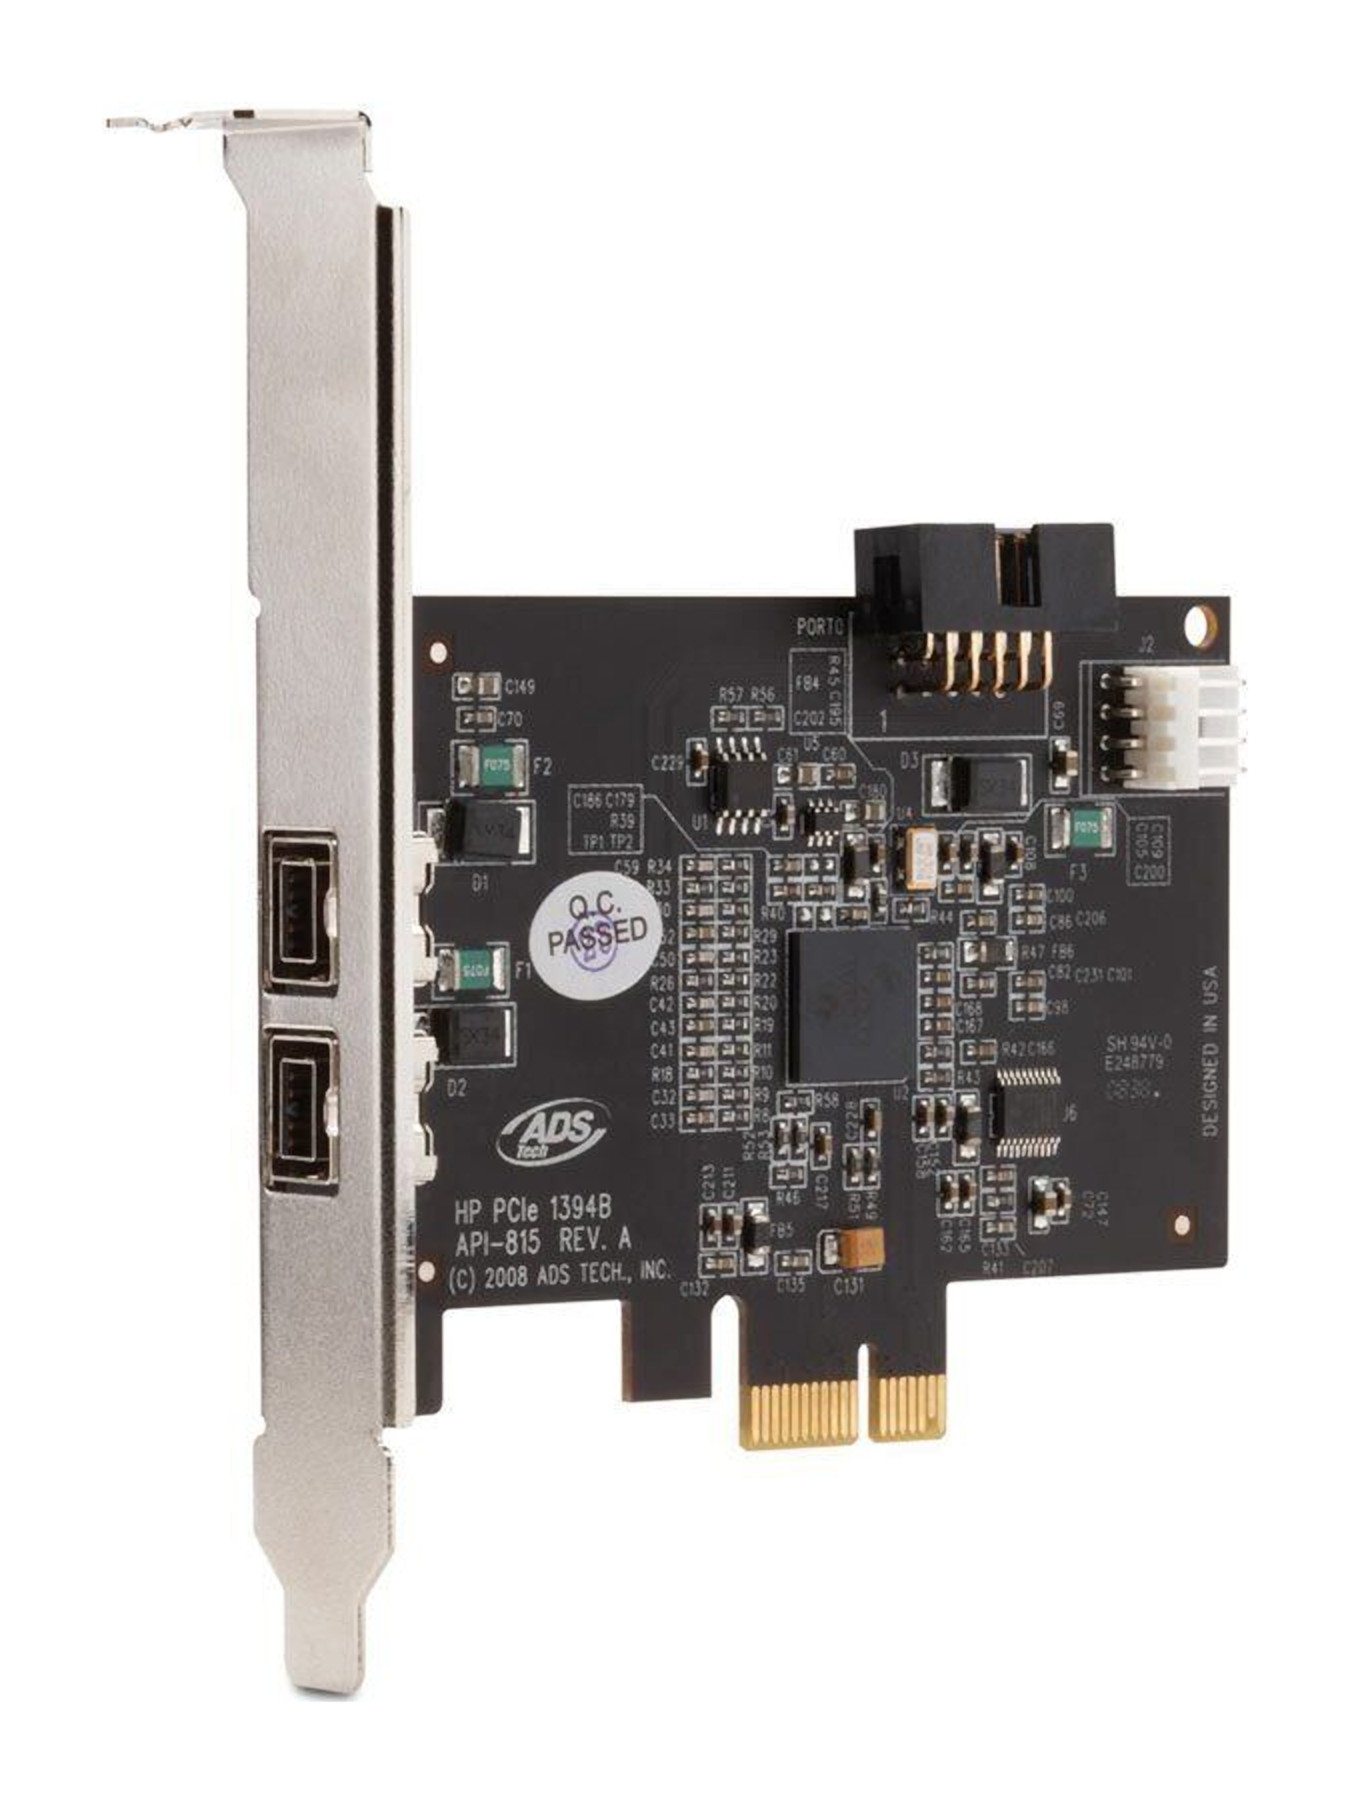 HP API-815 1394b Dual Port FireWire PCI-E Interface Card 491886-001 508927-001